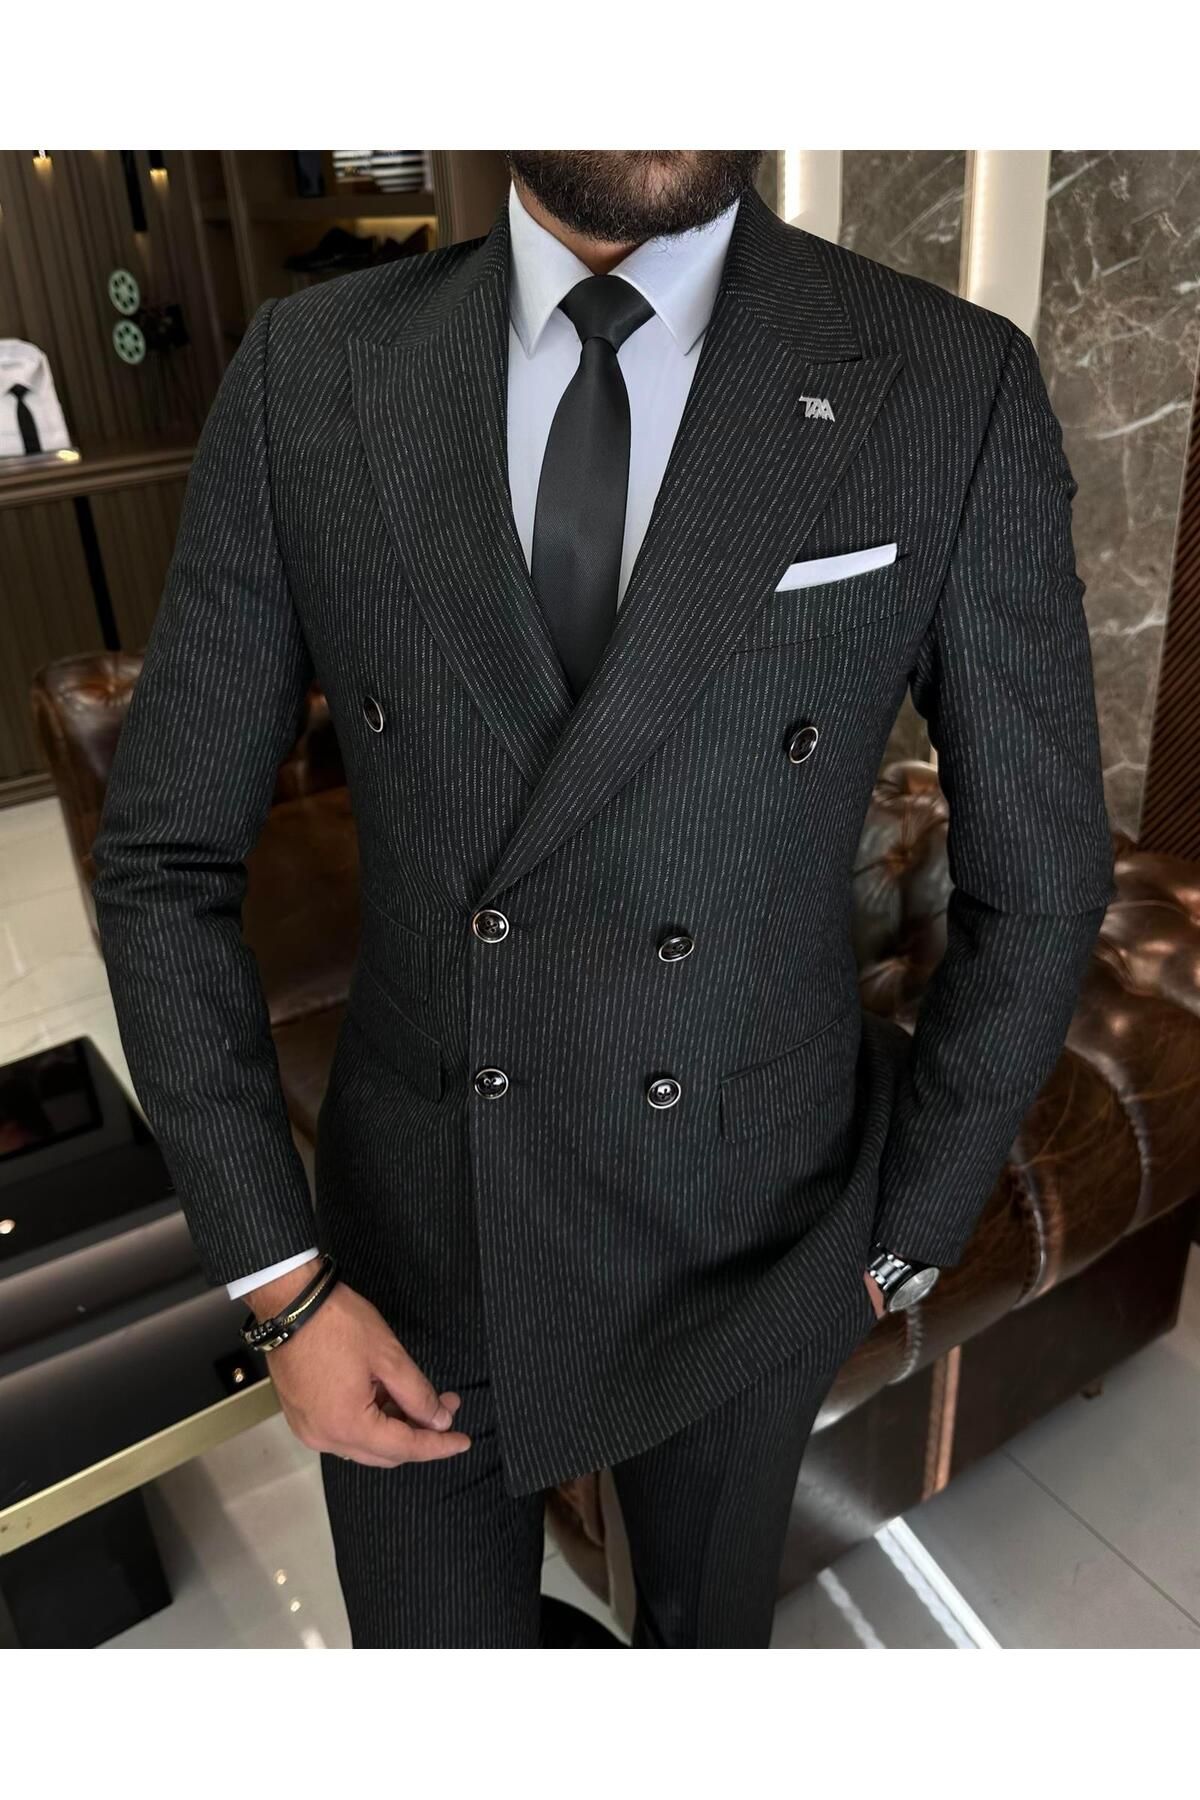 TerziAdemAltun İtalyan stil slim fit çizgili ceket pantolon takım elbise siyah T9946